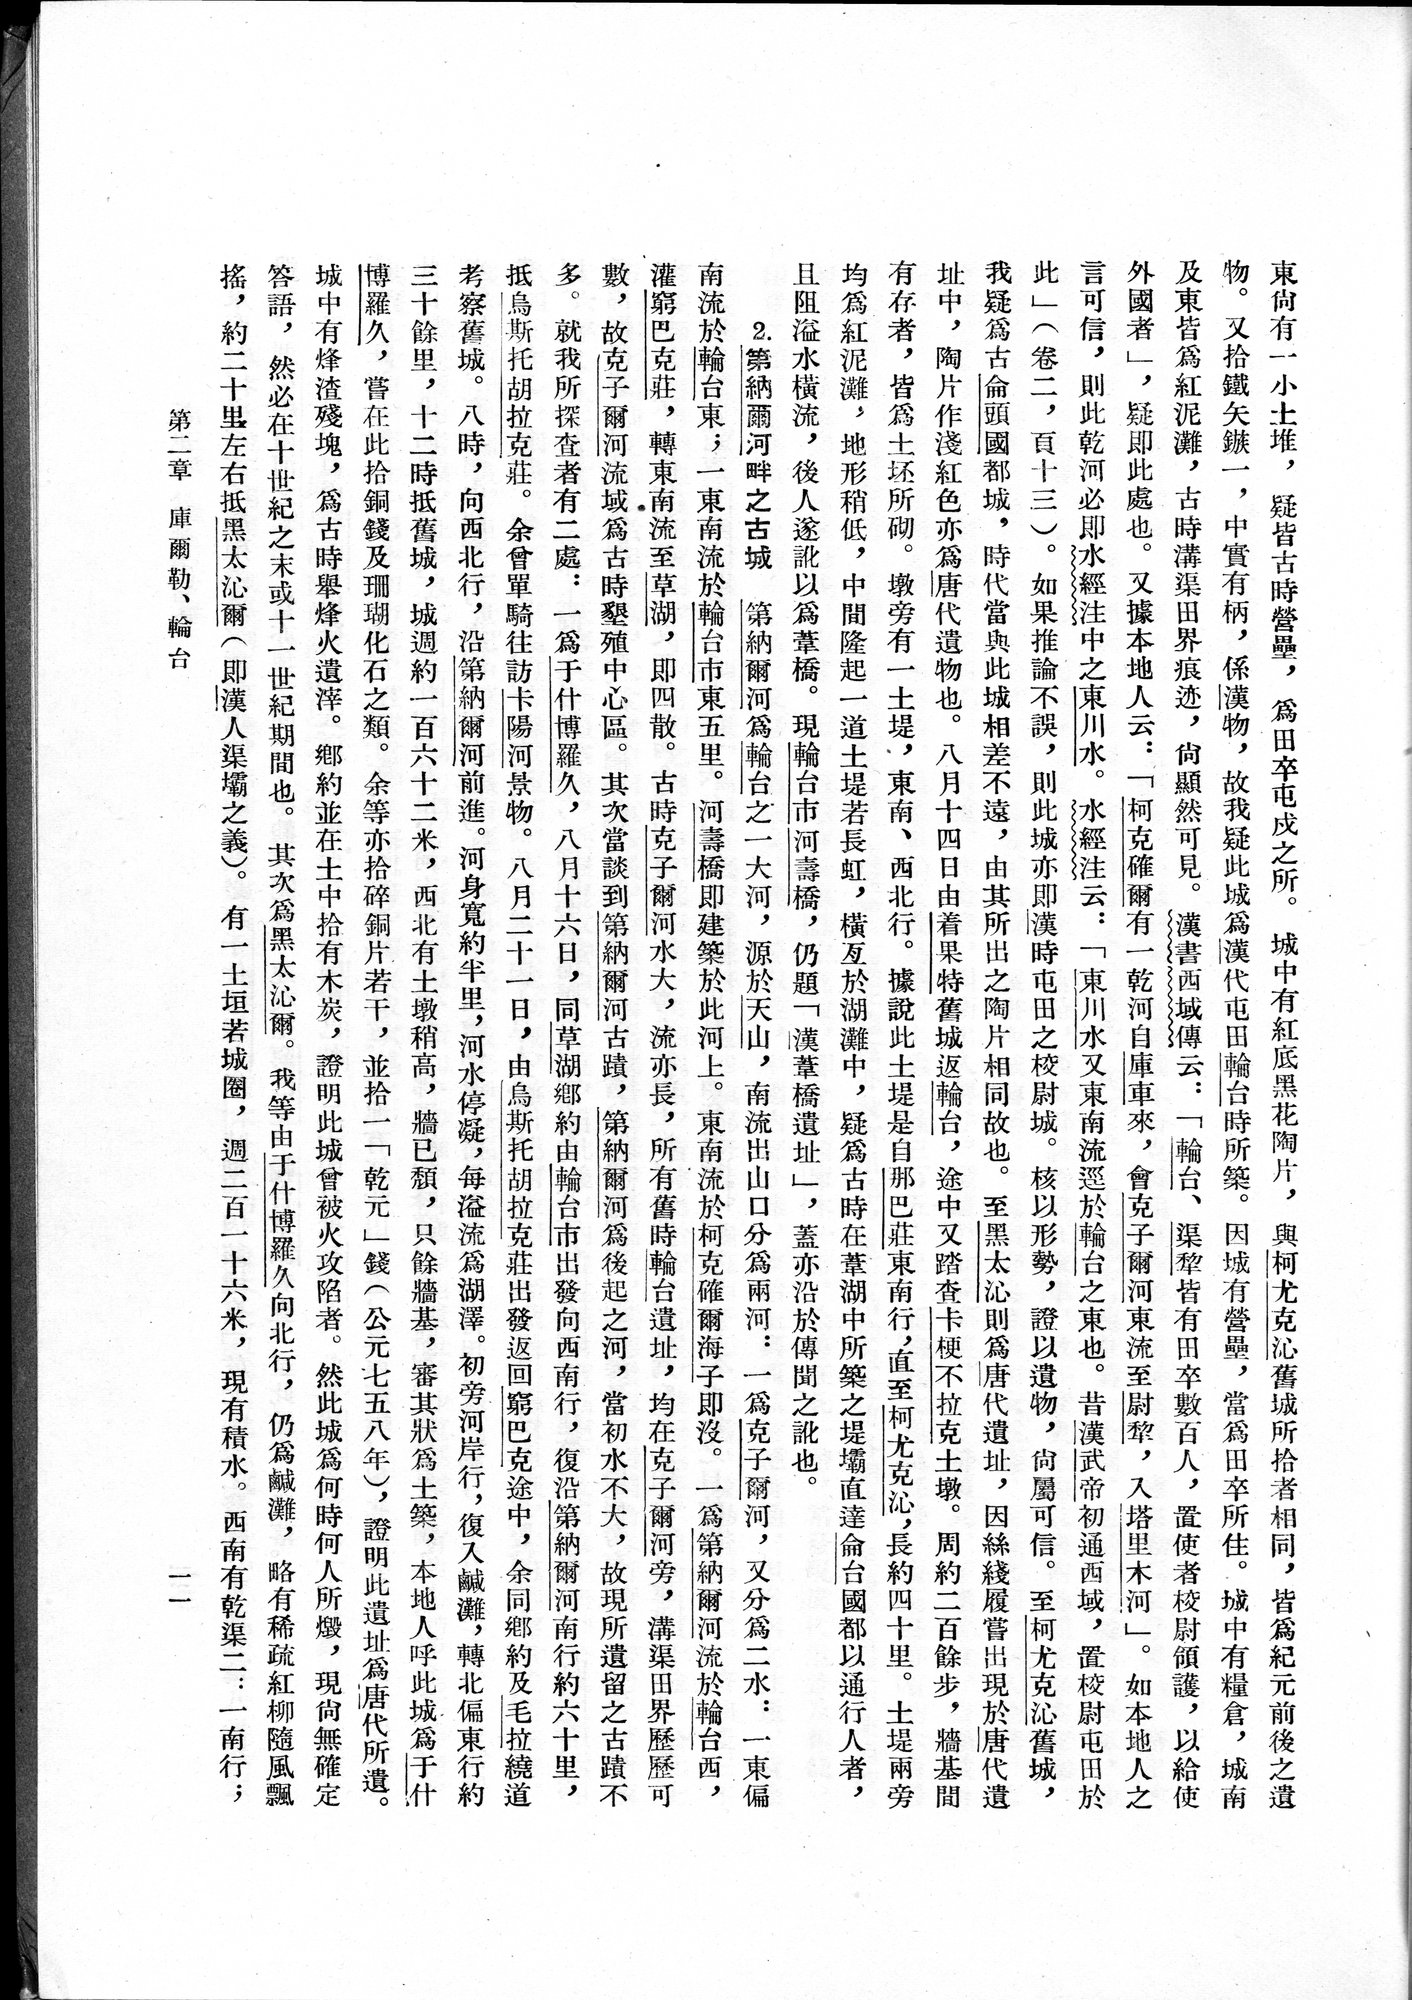 塔里木盆地考古記 : vol.1 / Page 35 (Grayscale High Resolution Image)